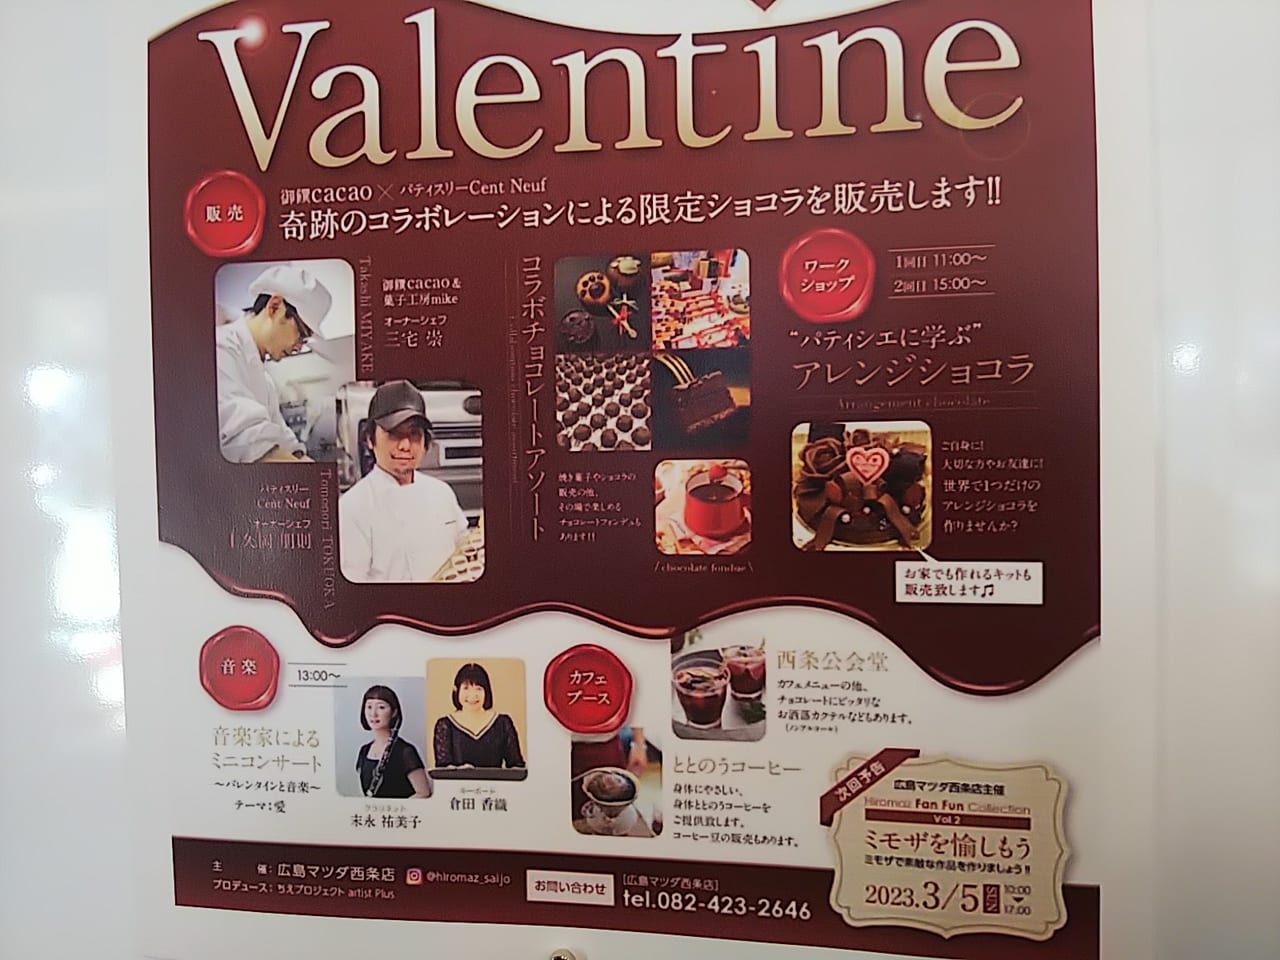 広島マツダ西条店主催「ハッピーバレンタイン企画」が魅力的